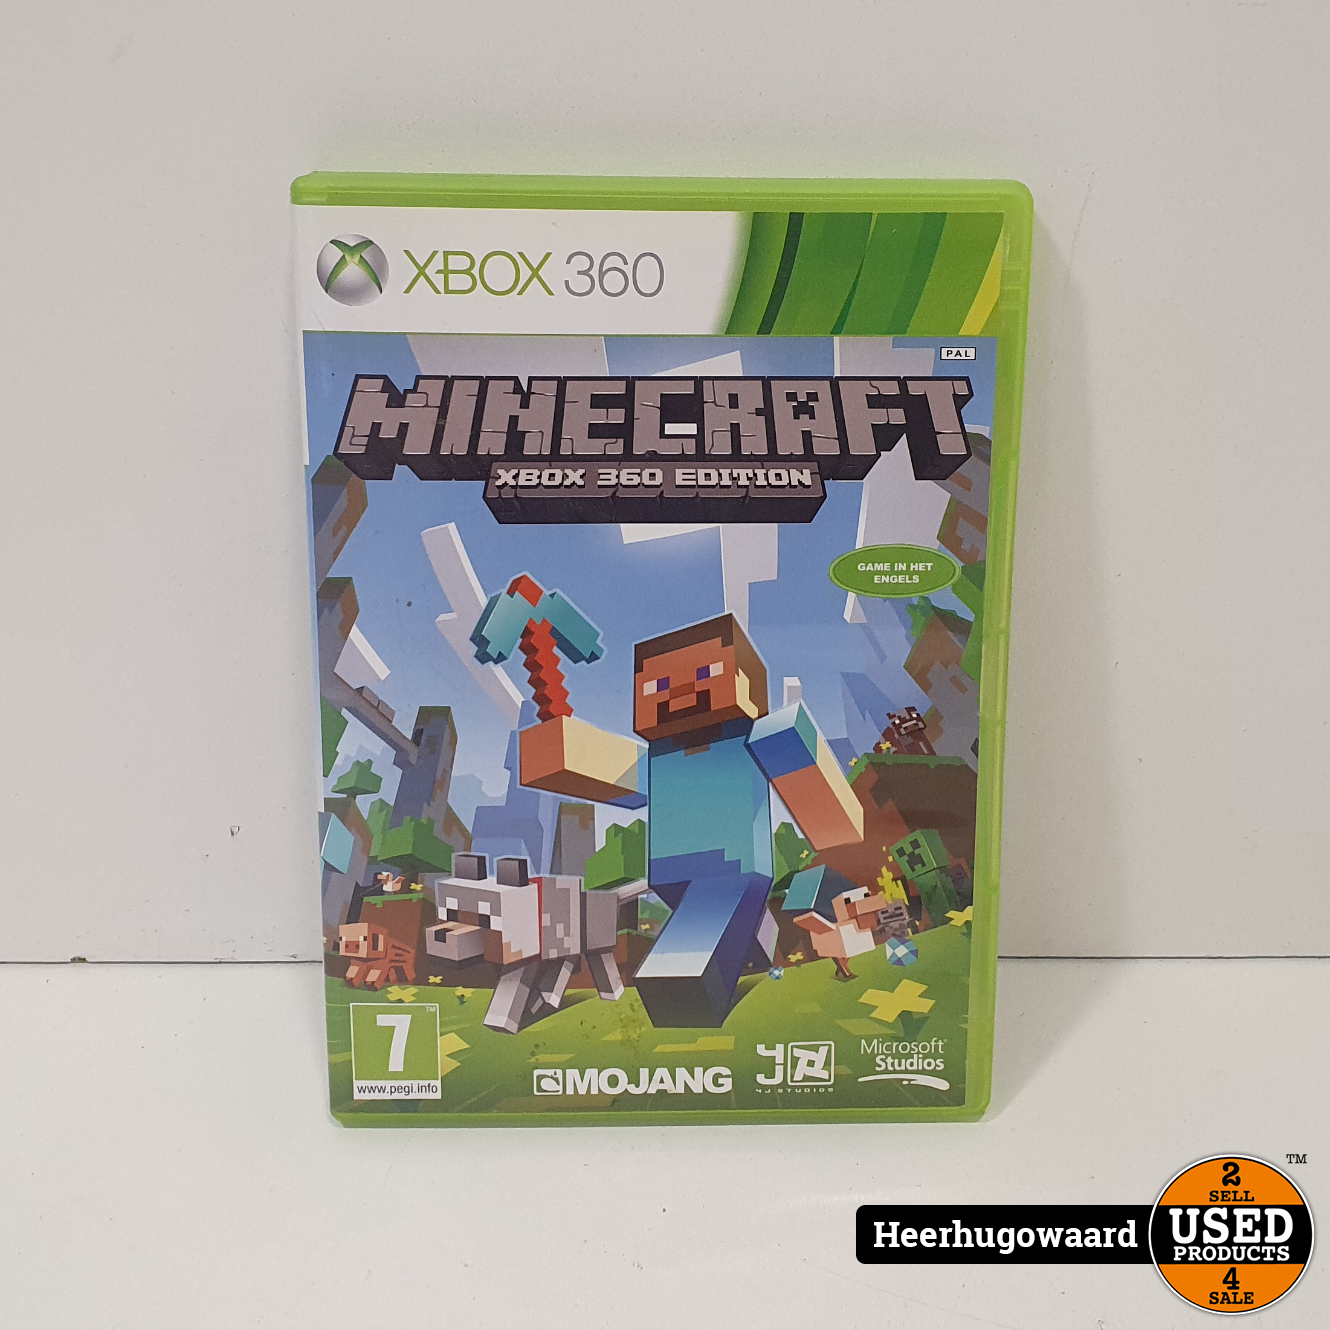 Cokes Senaat Voorstellen Xbox 360 Game: Minecraft Xbox 360 Edition in Nette Staat - Used Products  Heerhugowaard